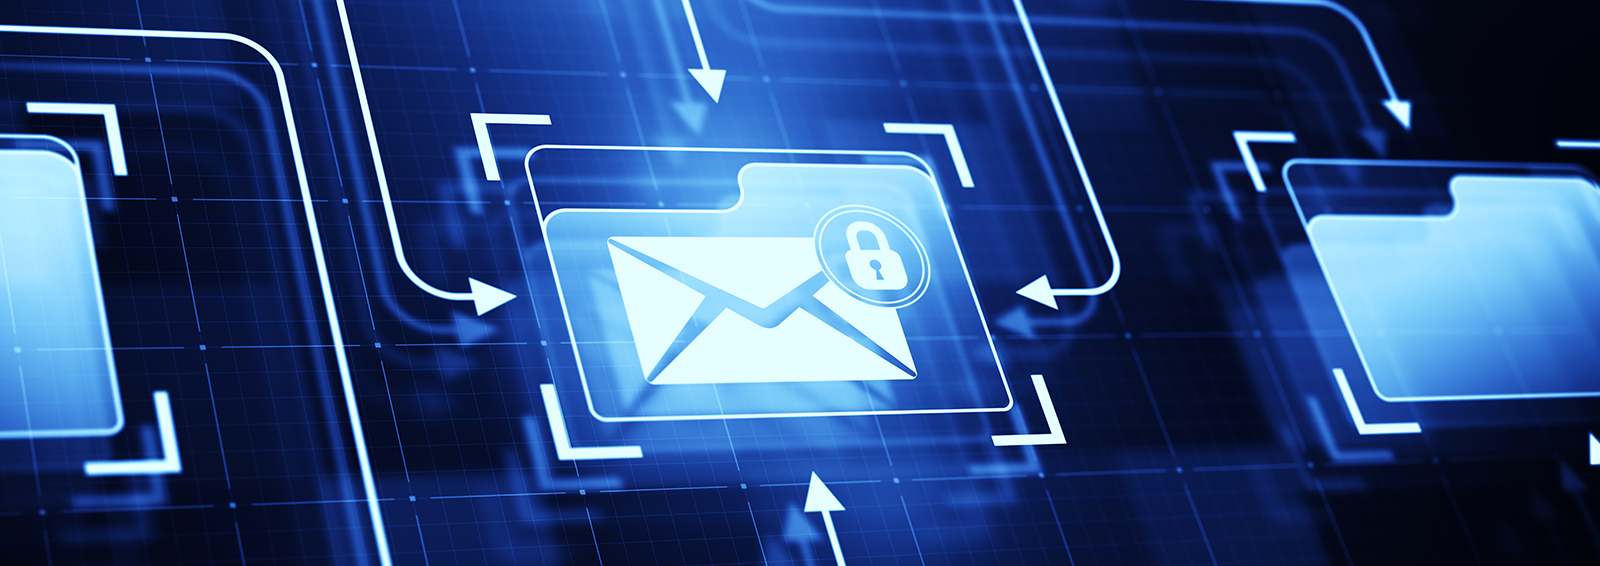 Erstklassige E-Mail-Sicherheit – ITENOS Managed Mail Security bietet größtmöglichen Schutz vor Cyberattacken und Malware-Angriffen.